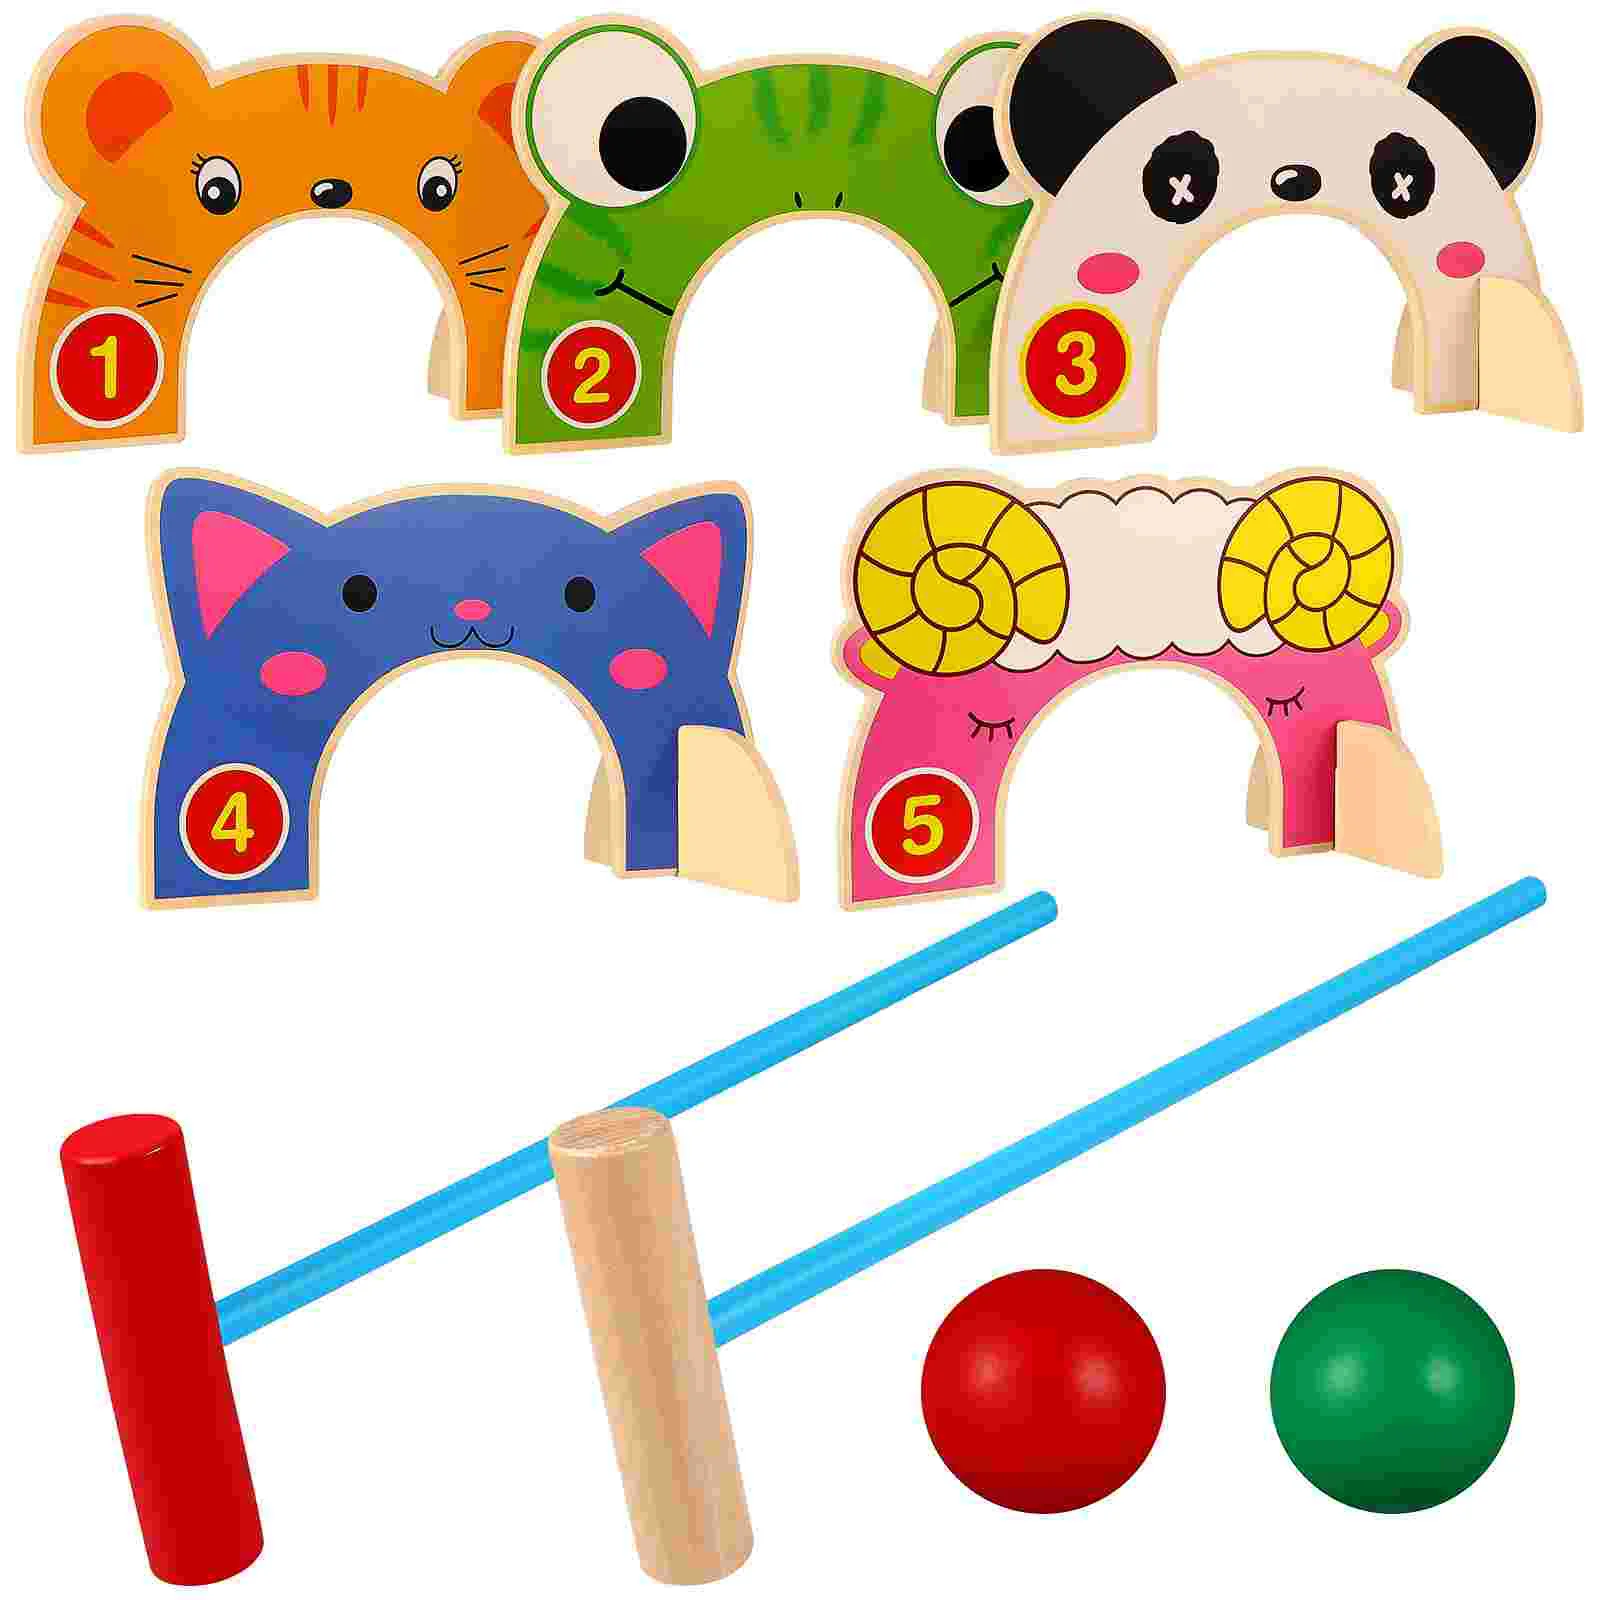 

Набор игрушек-крокеток из мультфильма, игрушки-ворота для животных, интерактивные игрушки для родителей и детей, игры на газон